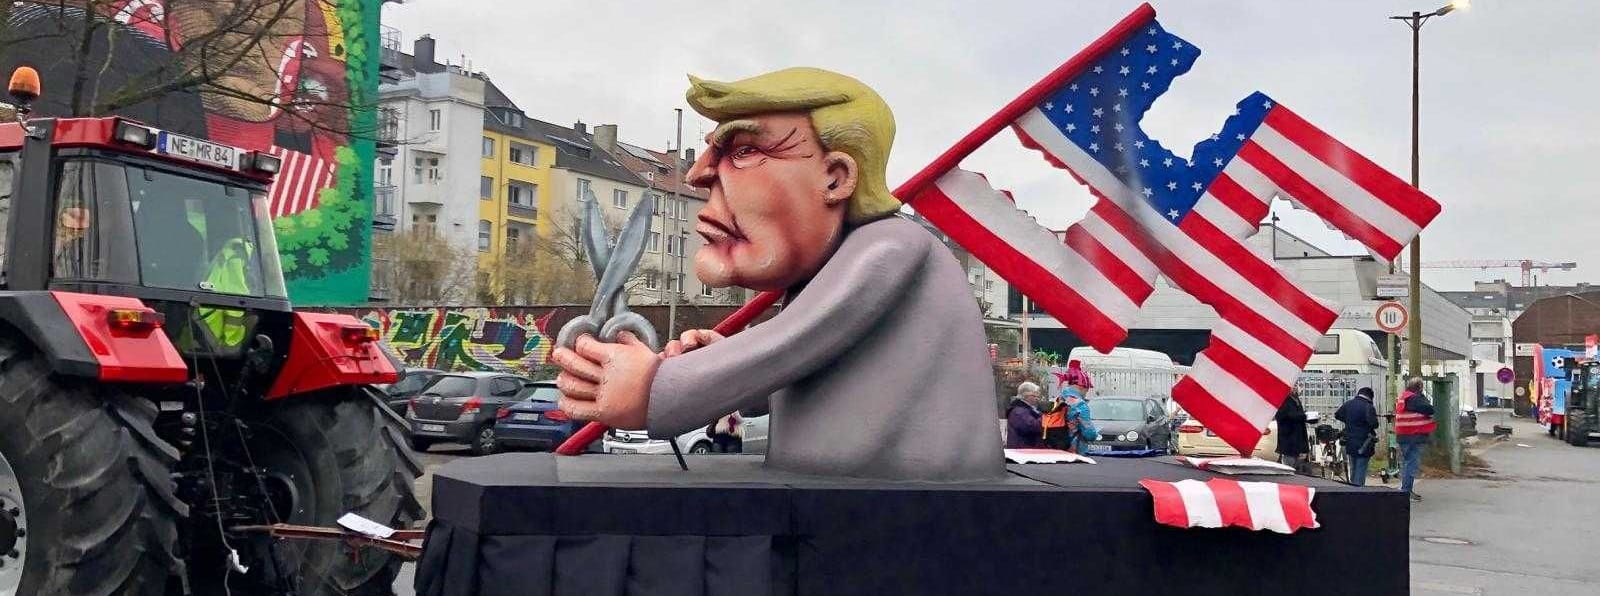 Ein Wagen mit einer Figur des US-Präsidentschaftskandidaten Donald Trump, mit US-Hakenkreuz-Fahne und Schere in der Hand.